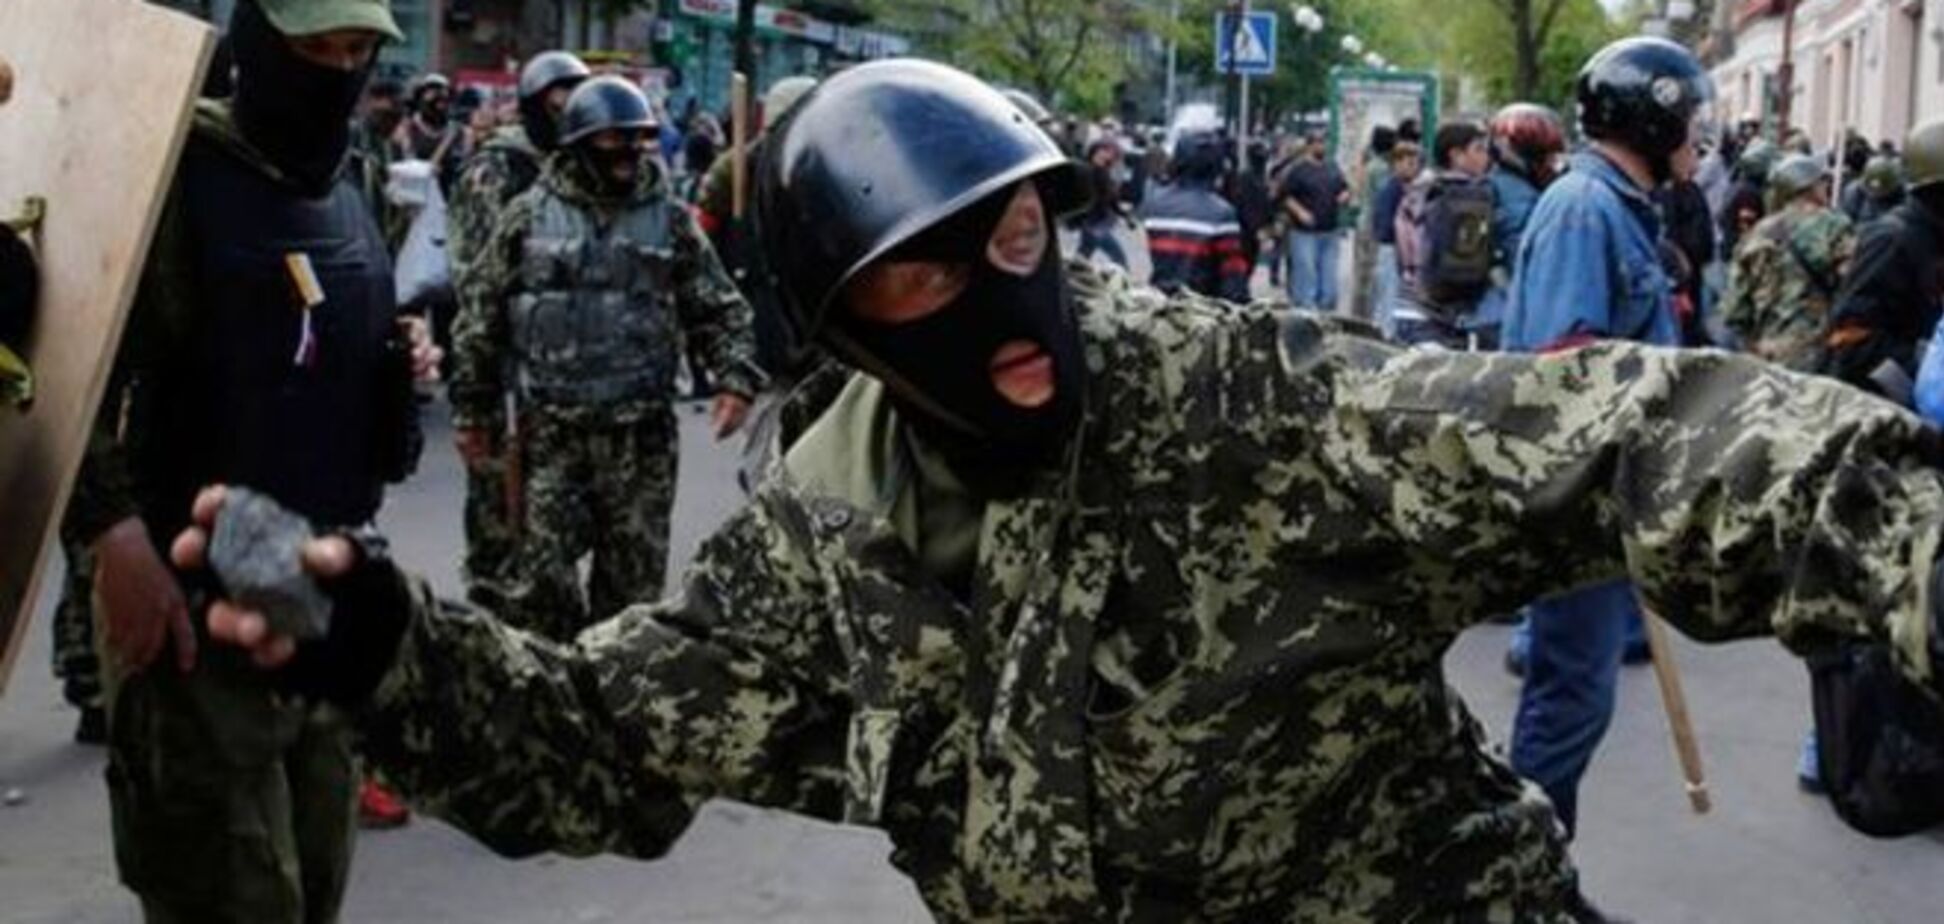 Ко 2 мая в Одессу под видом патриотов завезут диверсантов - ИС